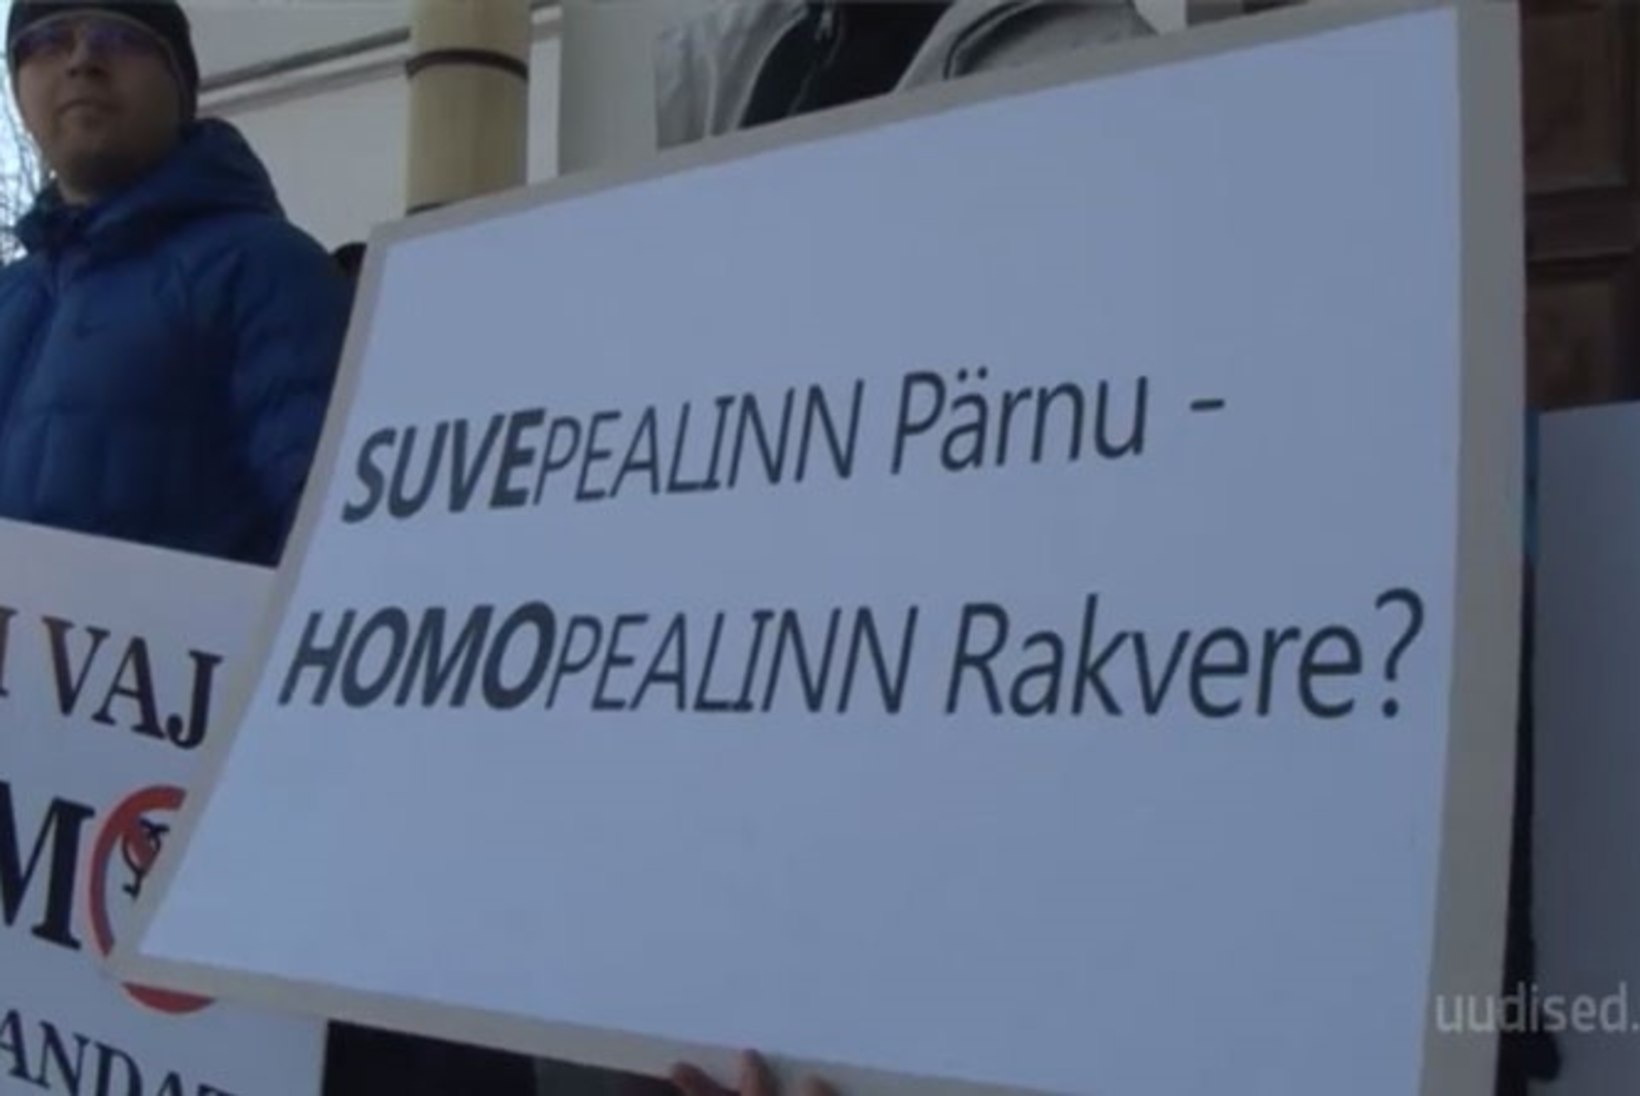 TV3 VIDEO | Rakvere homopealinnaks? Tänan, ei! EKRE korraldas Rakveres "homopropaganda" vastase meeleavalduse